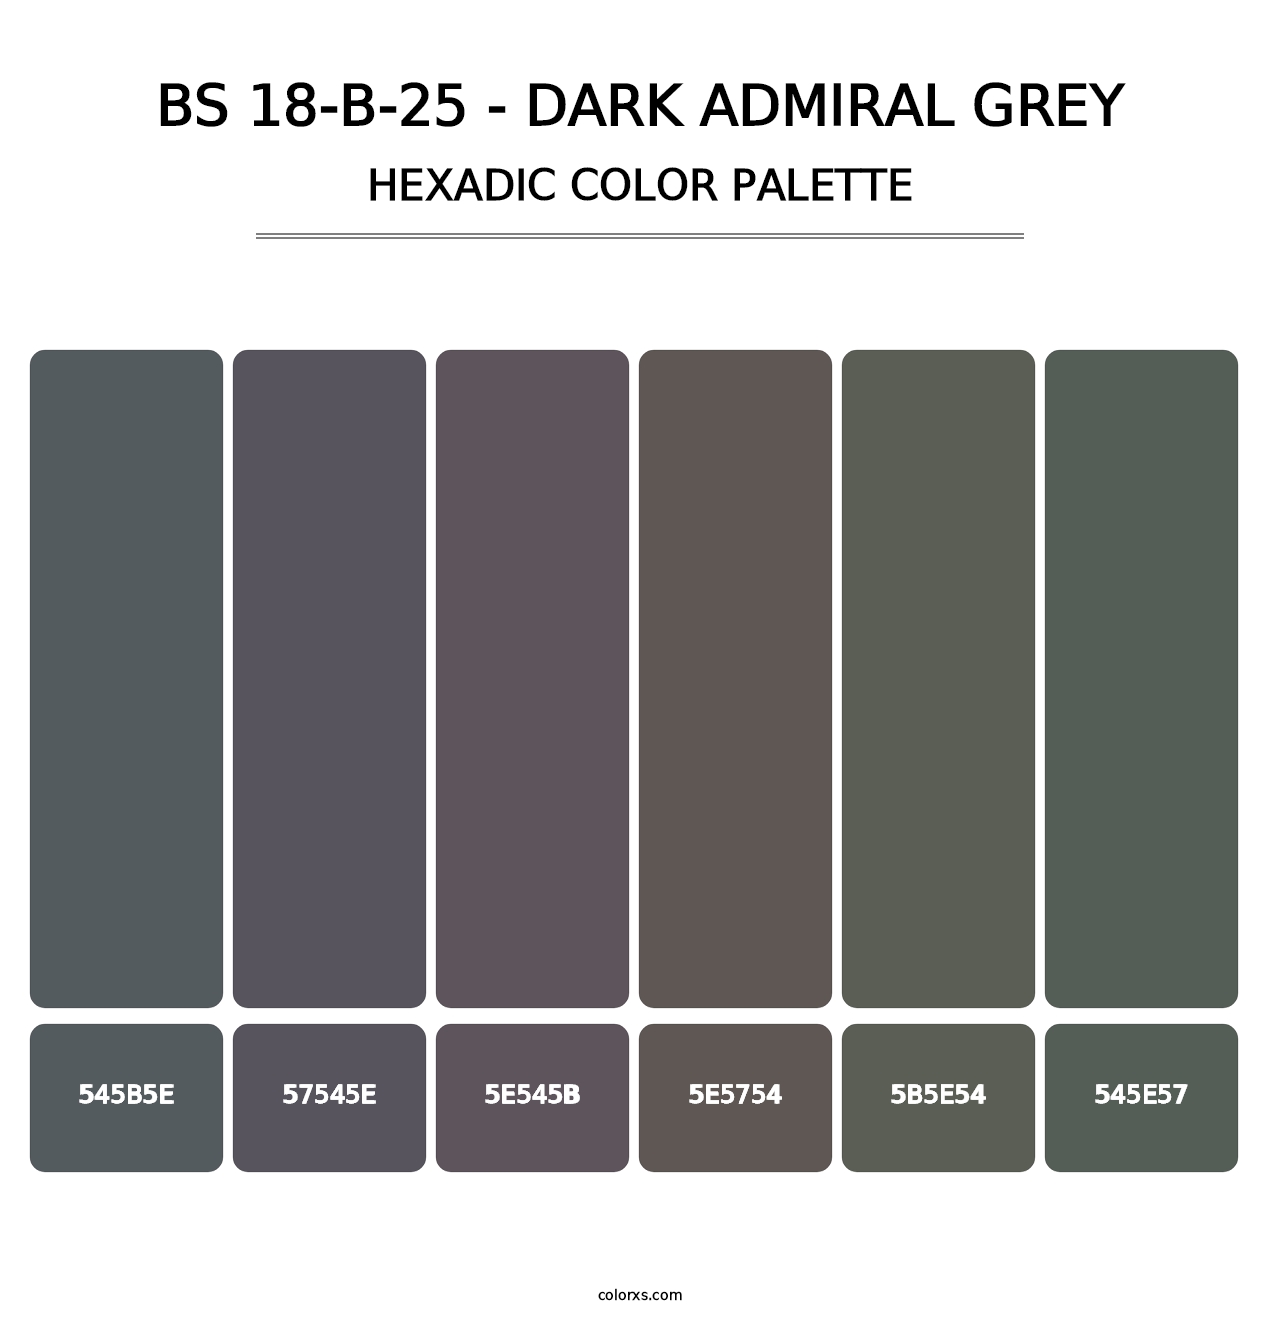 BS 18-B-25 - Dark Admiral Grey - Hexadic Color Palette